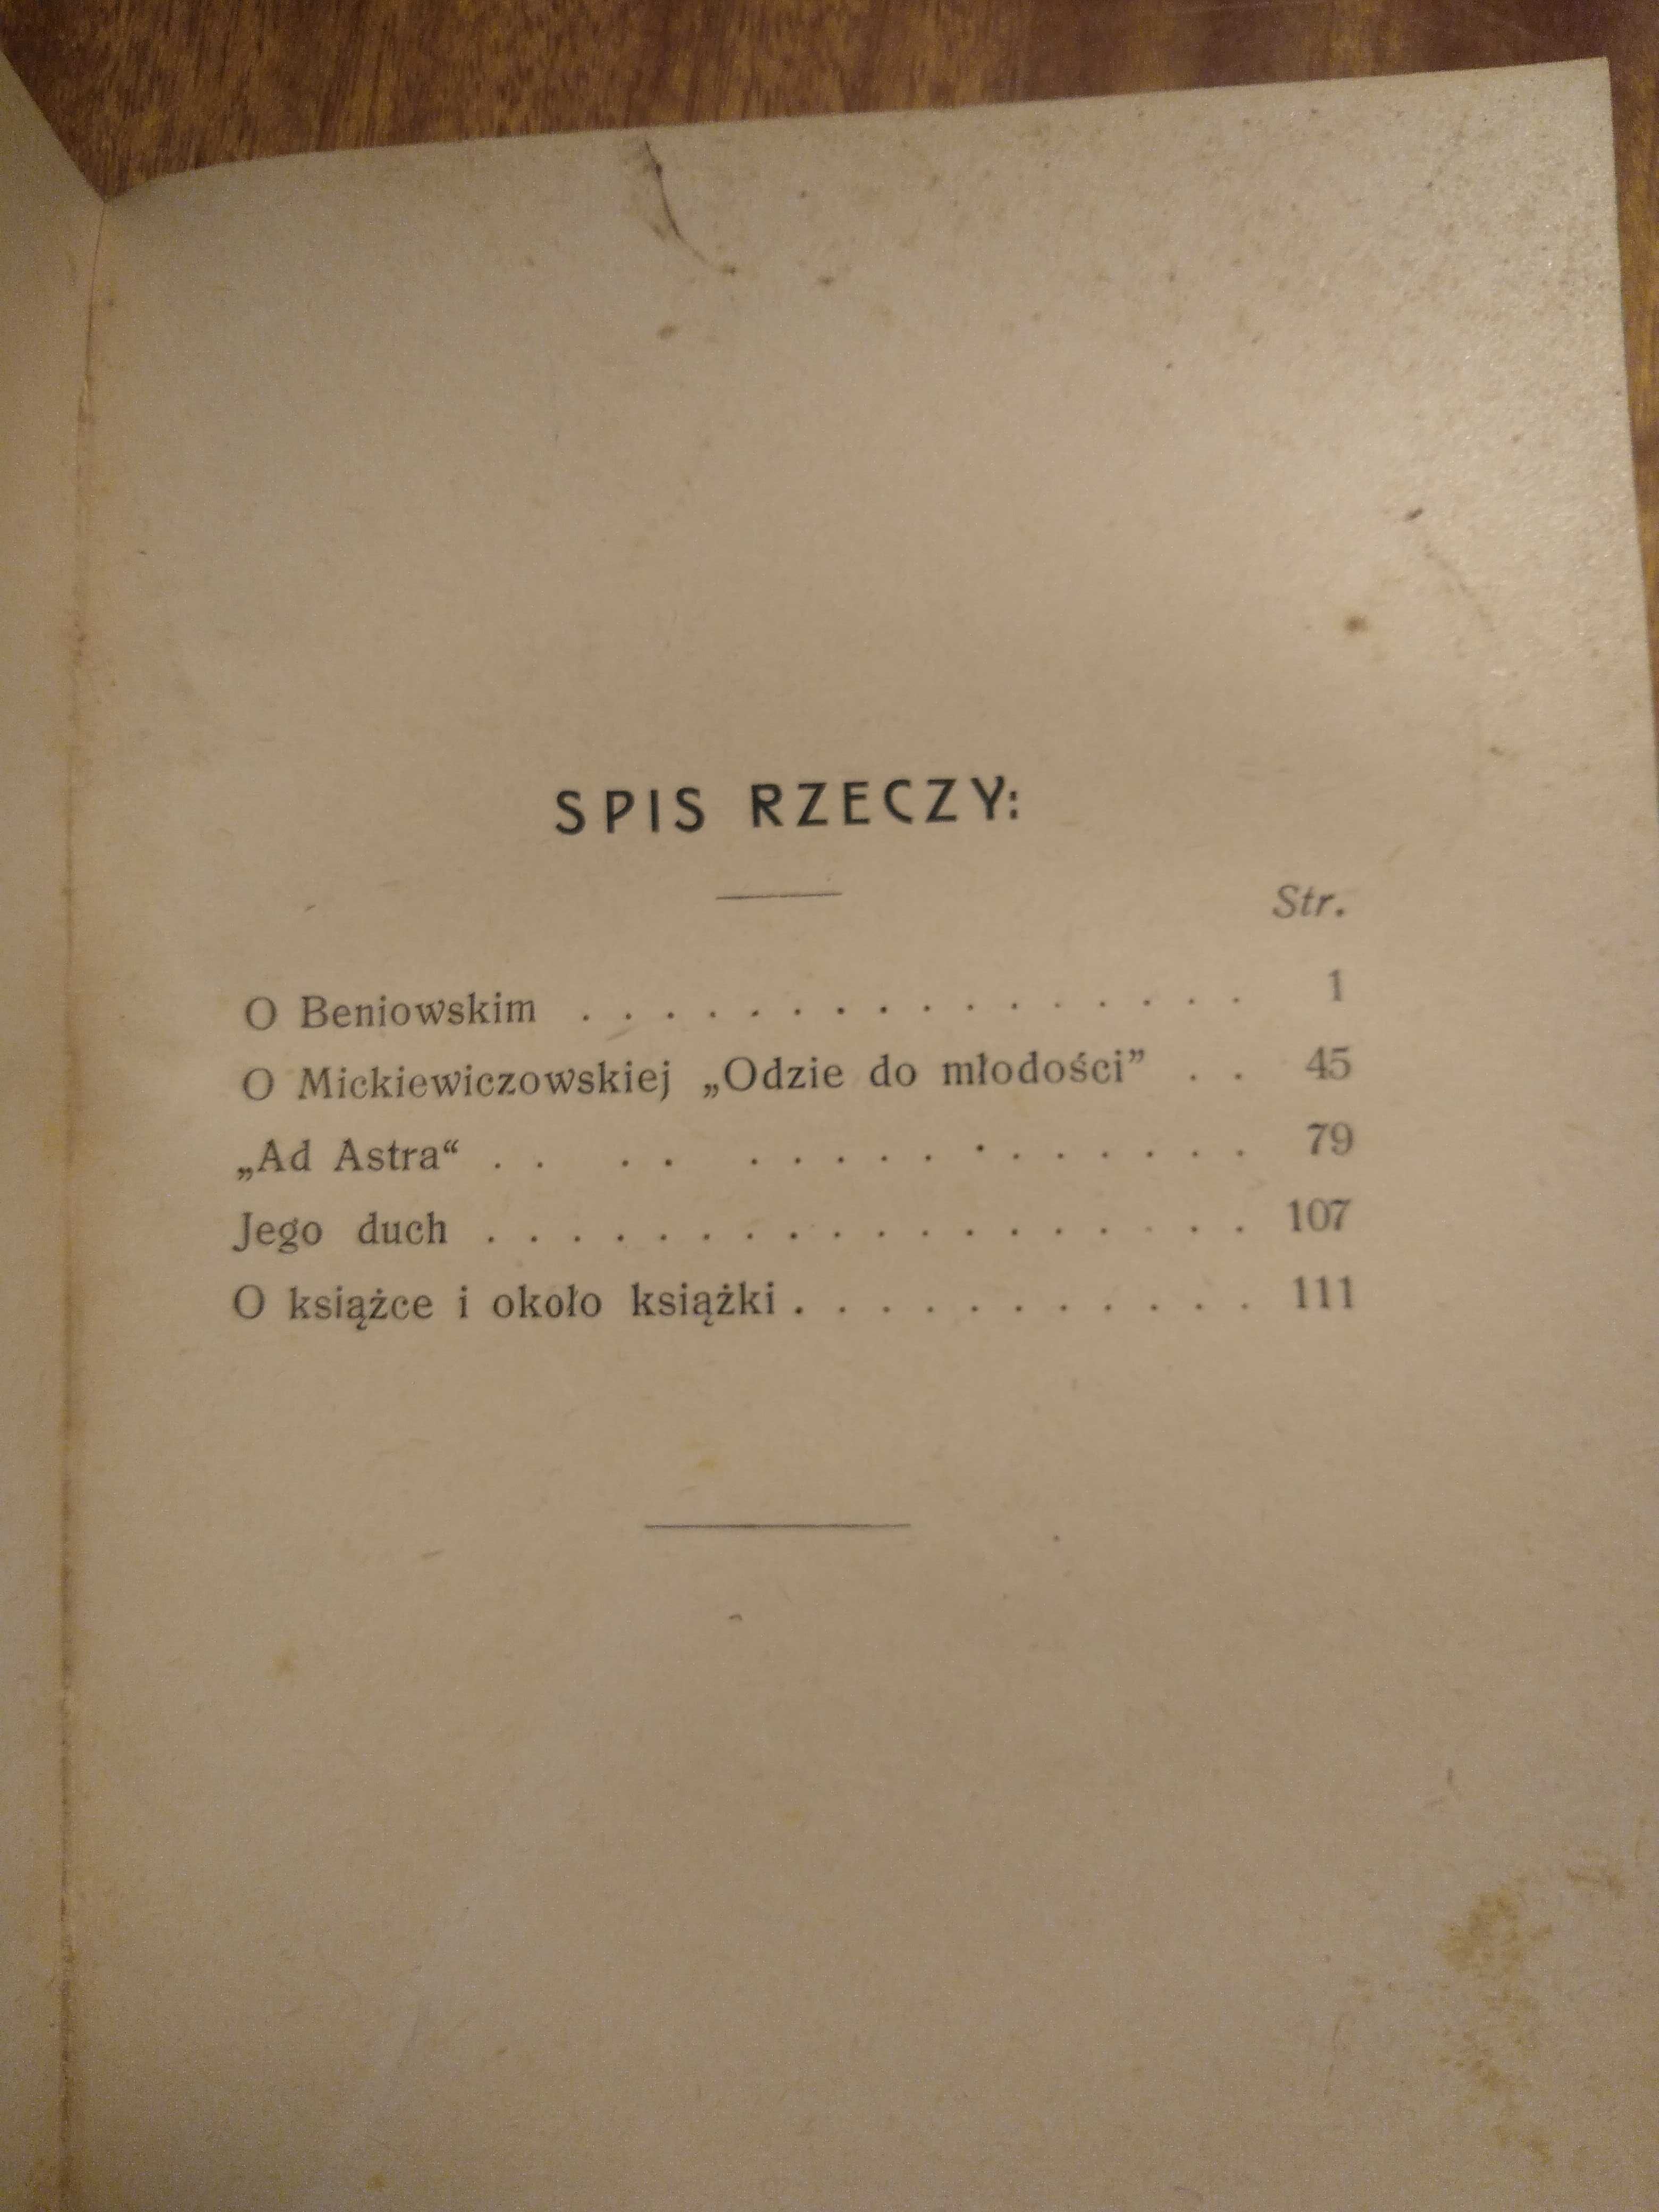 Zarys dziejów lit. pol., Konopnicka, Potocki - współoprawa - 1903